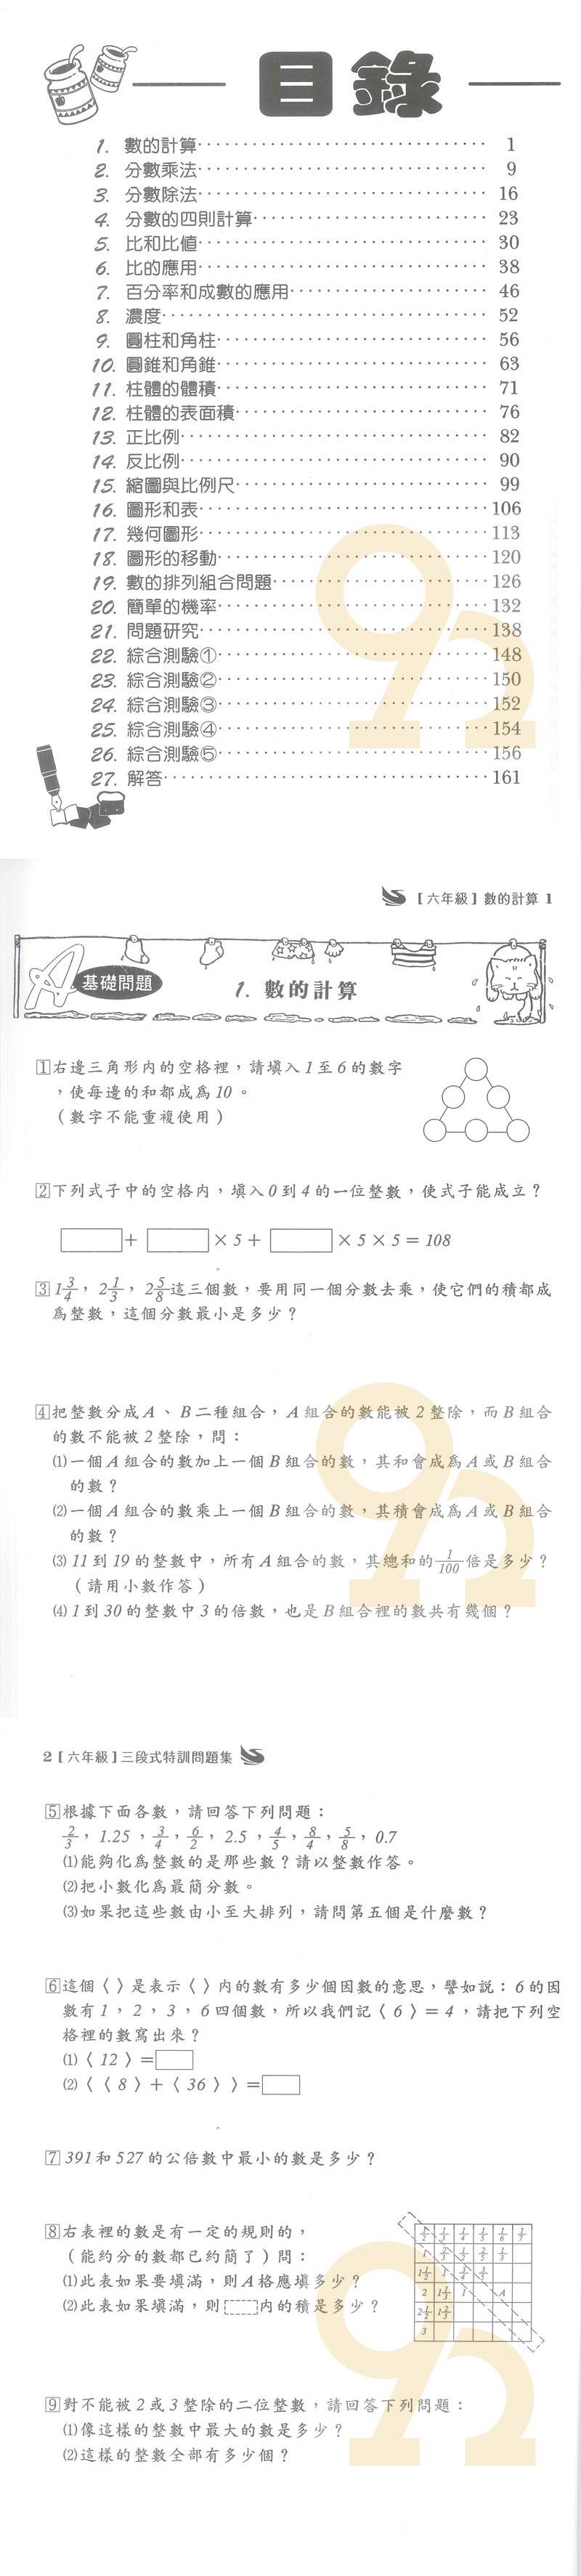 王百世國小3段式數學特訓問題集6年級 92號book櫃 參考書專賣店 Rakuten樂天市場